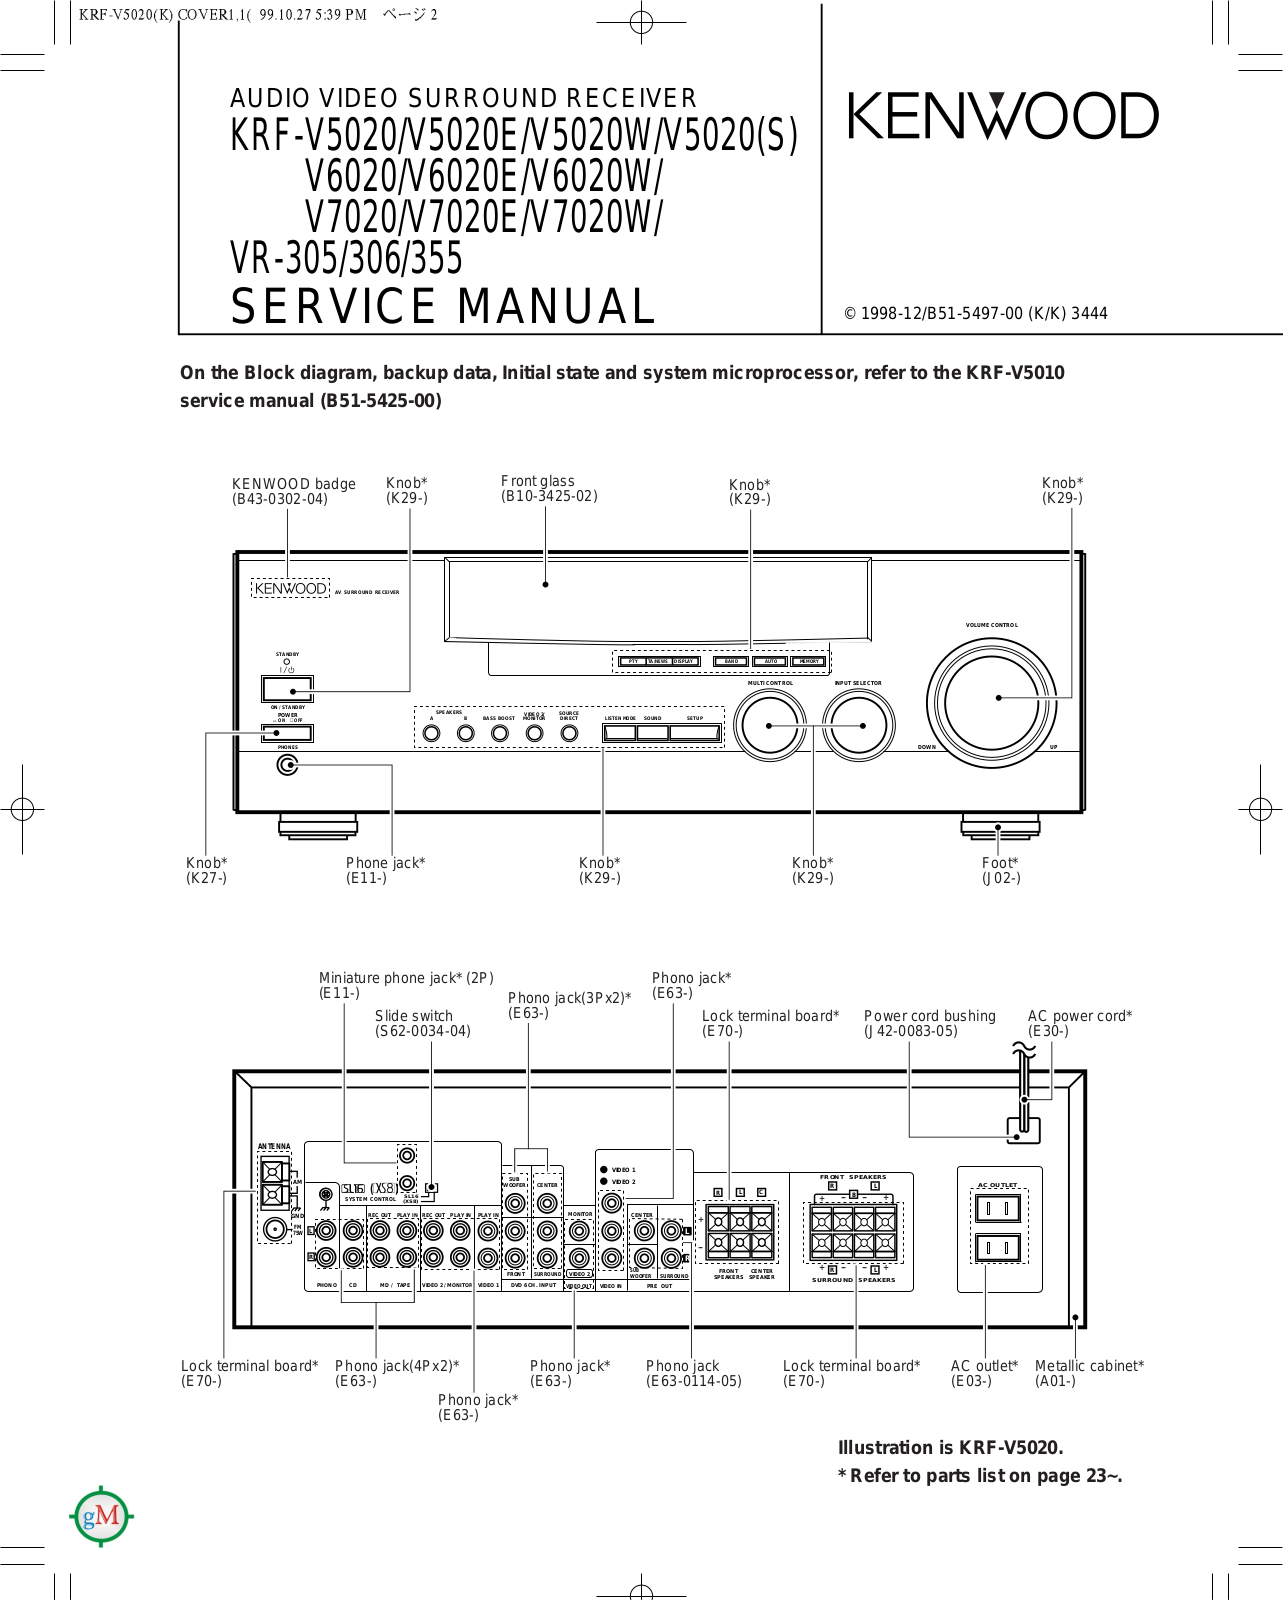 Kenwood KRFV-5020, KRFV-50205, KRFV-6020, KRFV-7020, VR-305 Service manual